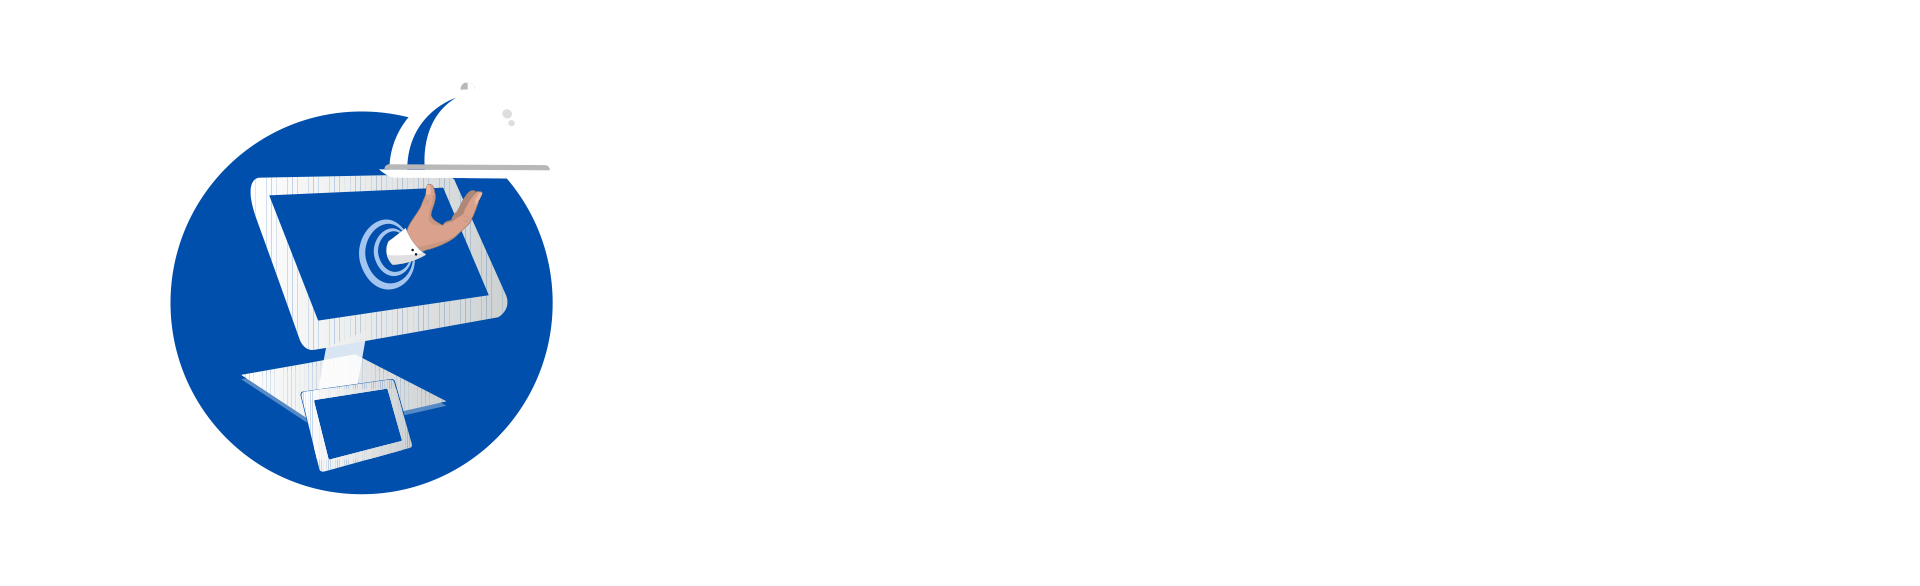 Smart Online Order